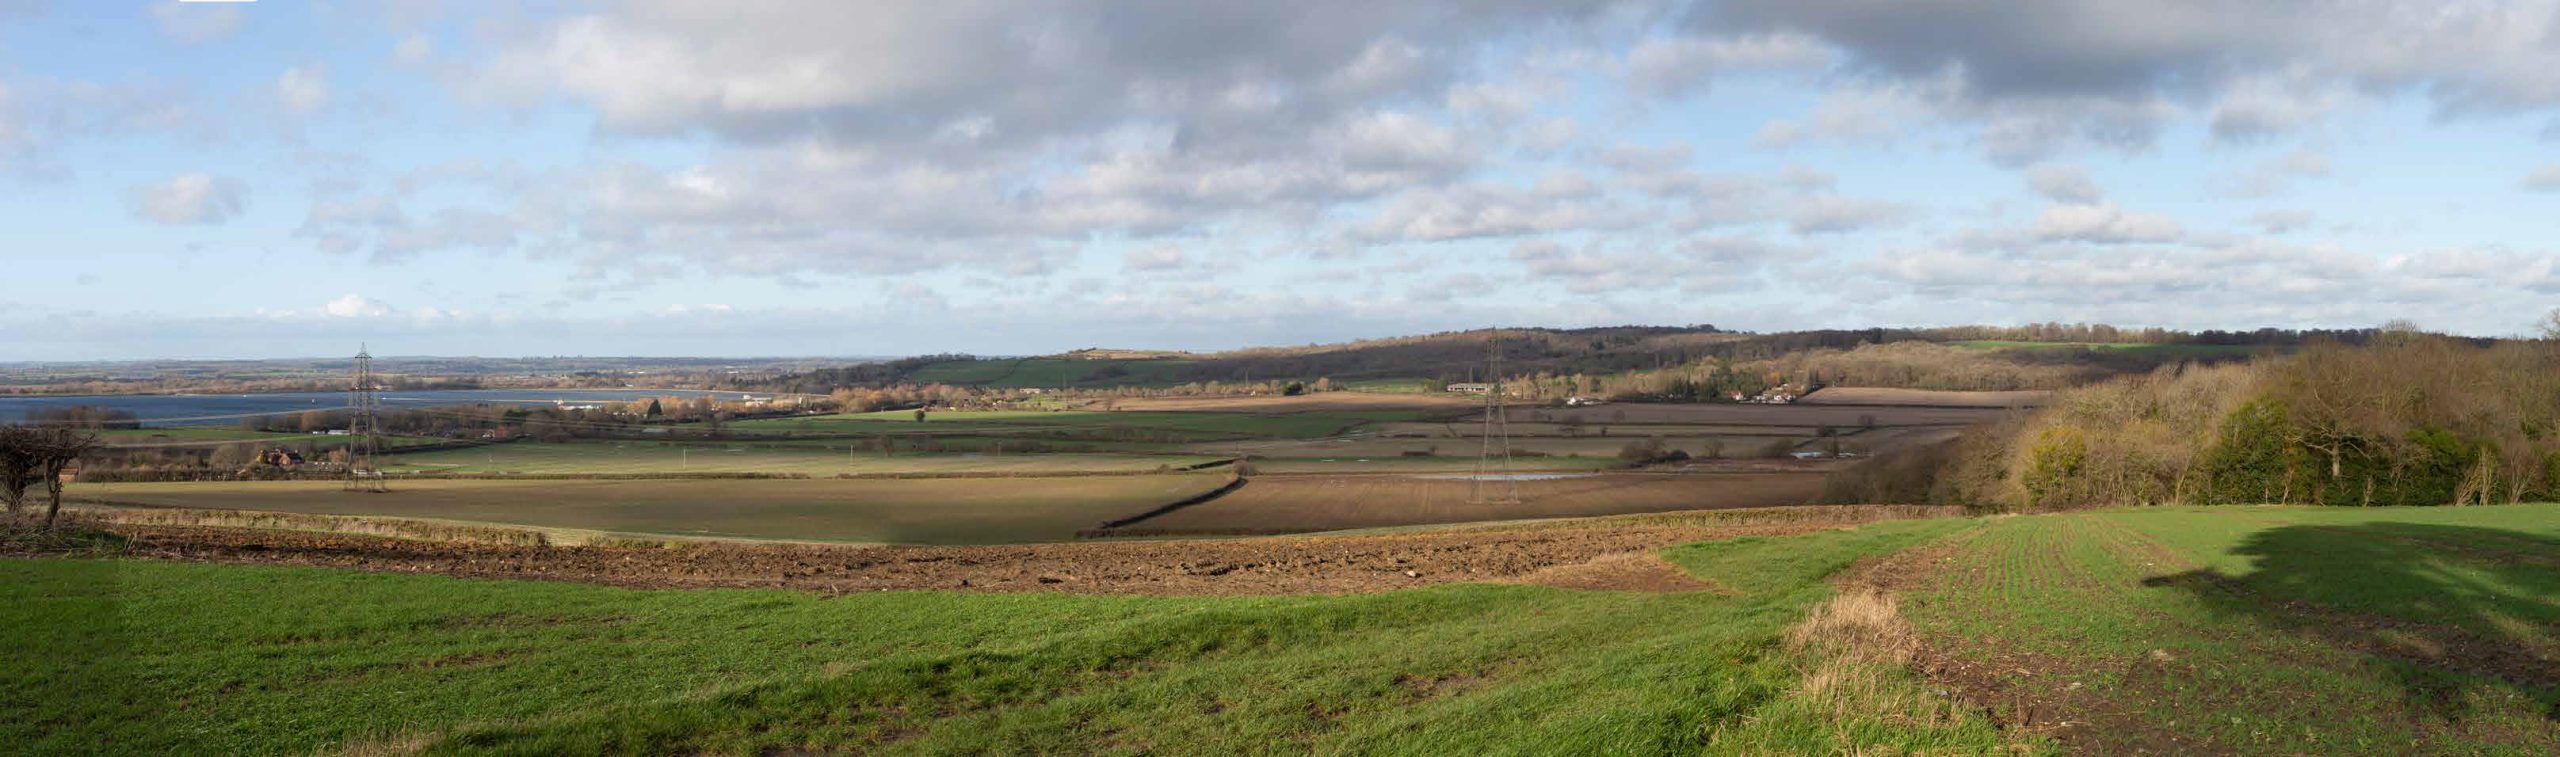 Botley West cerca de Oxford sería la granja solar más grande de Europa, cubriendo 3.400 acres